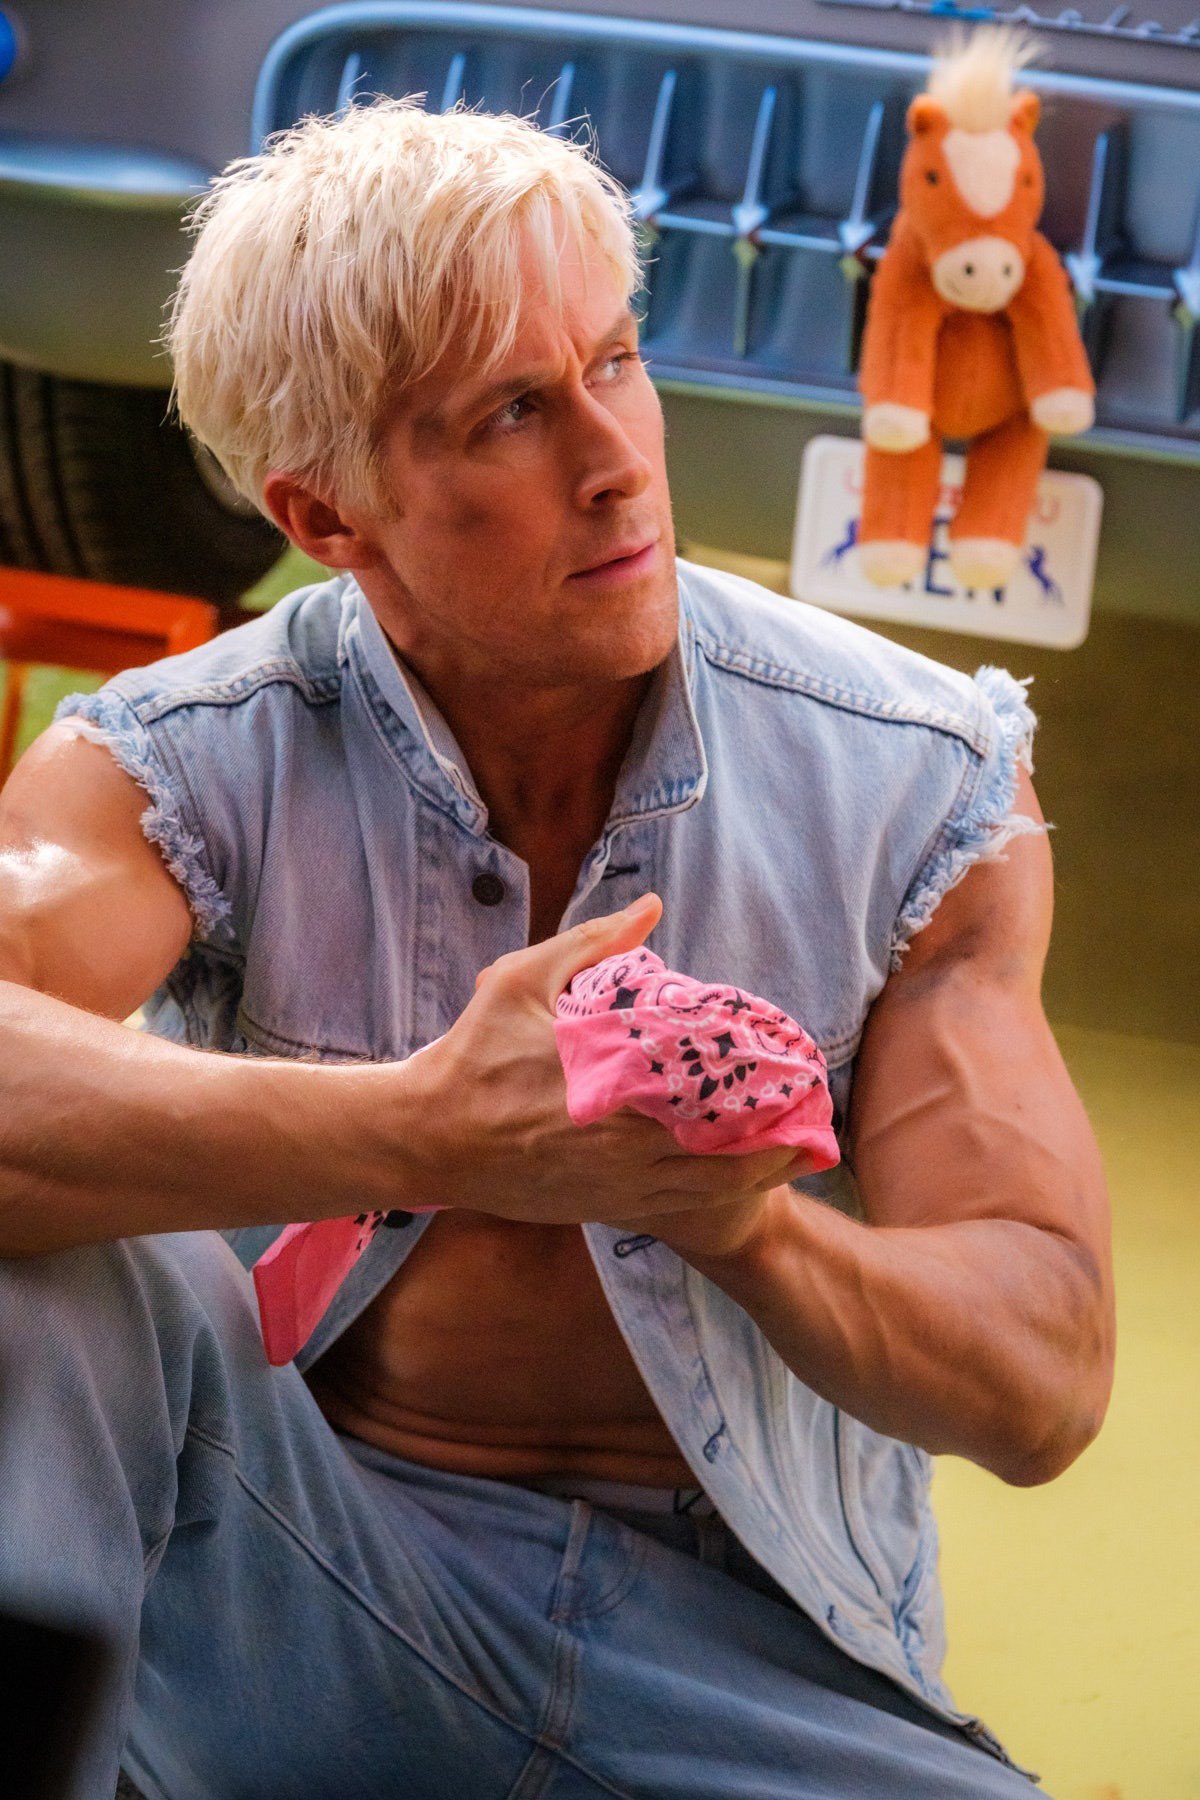 21 on X: Ryan Gosling as 'Ken' in #BarbieMovie